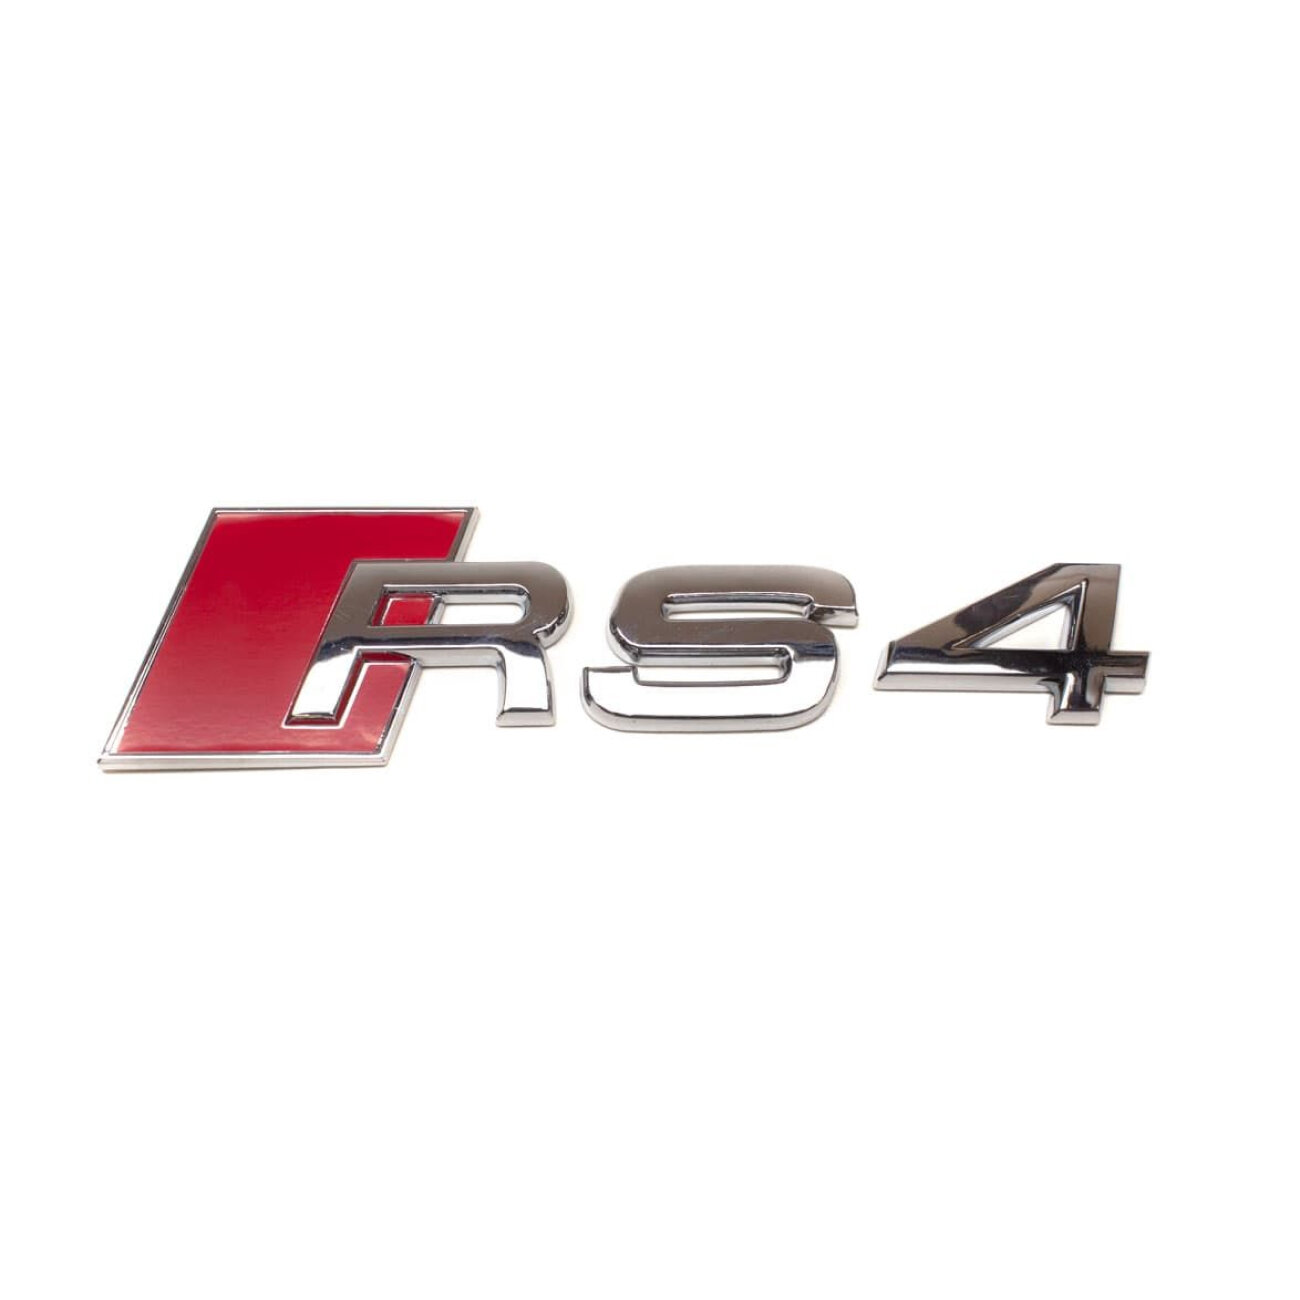 Шильдик на багажник для Audi от версии RS4 хром